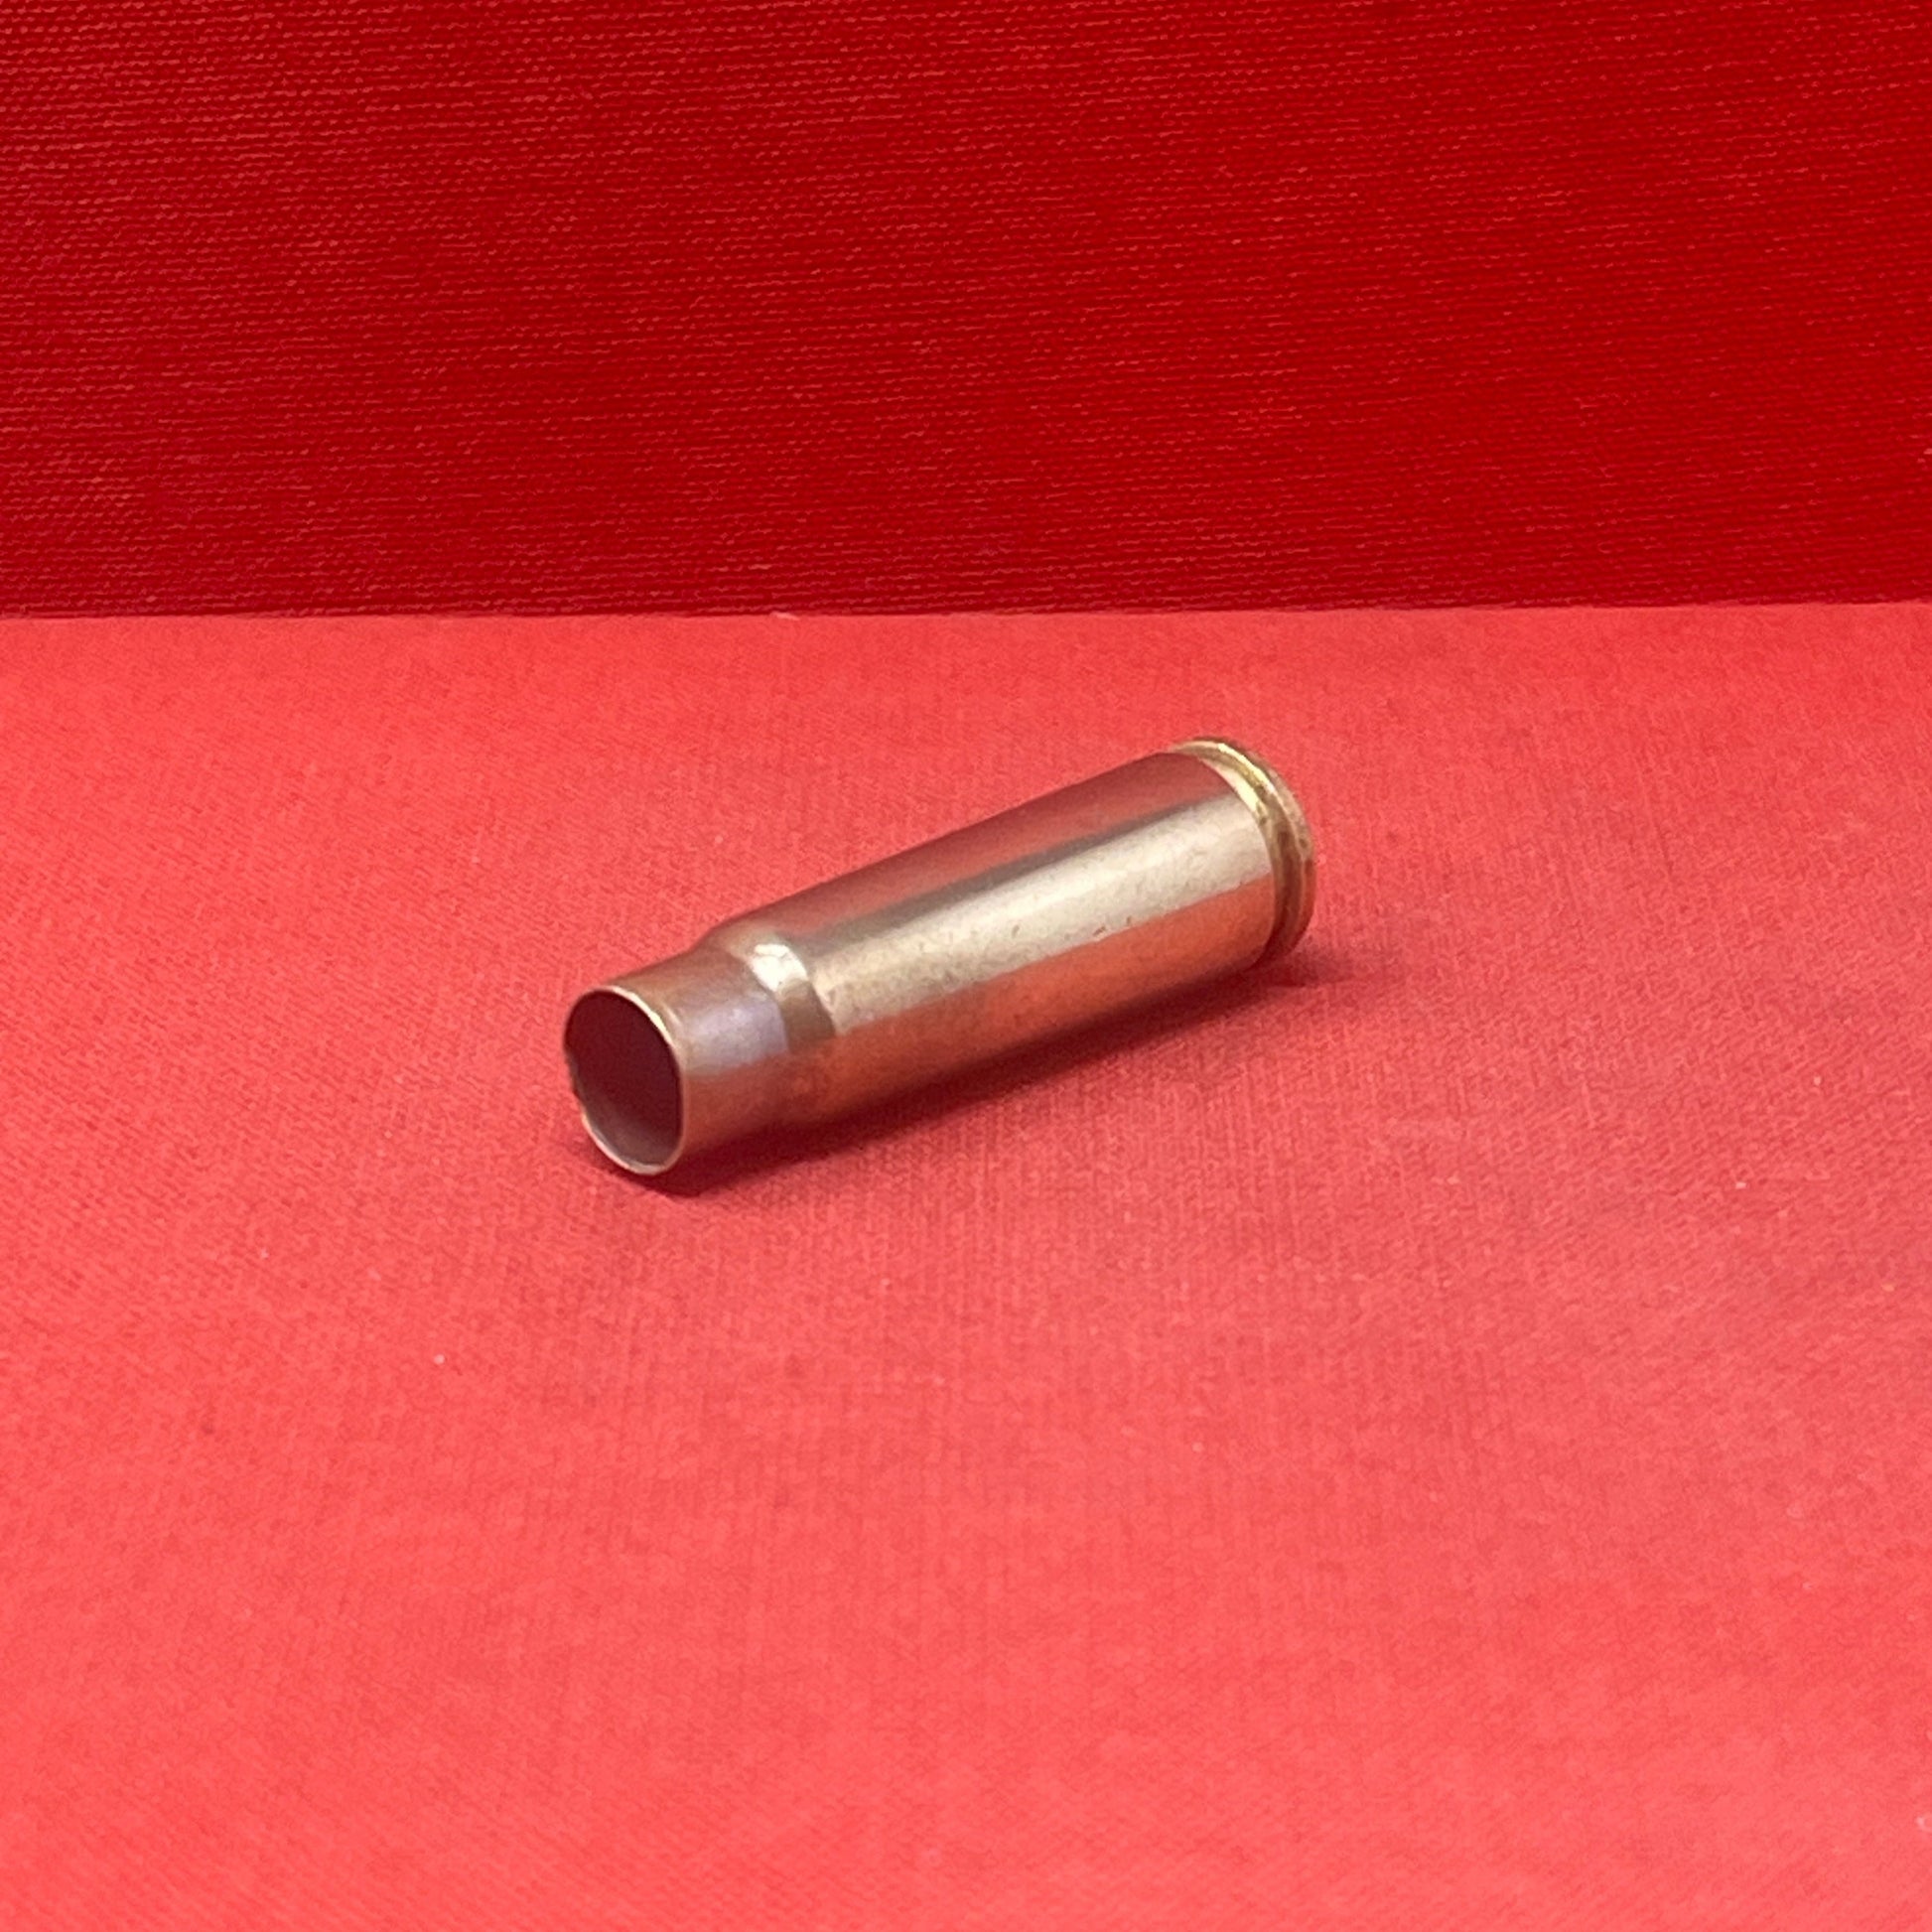 Russian 7.62x39mm Empty Cartridge Case